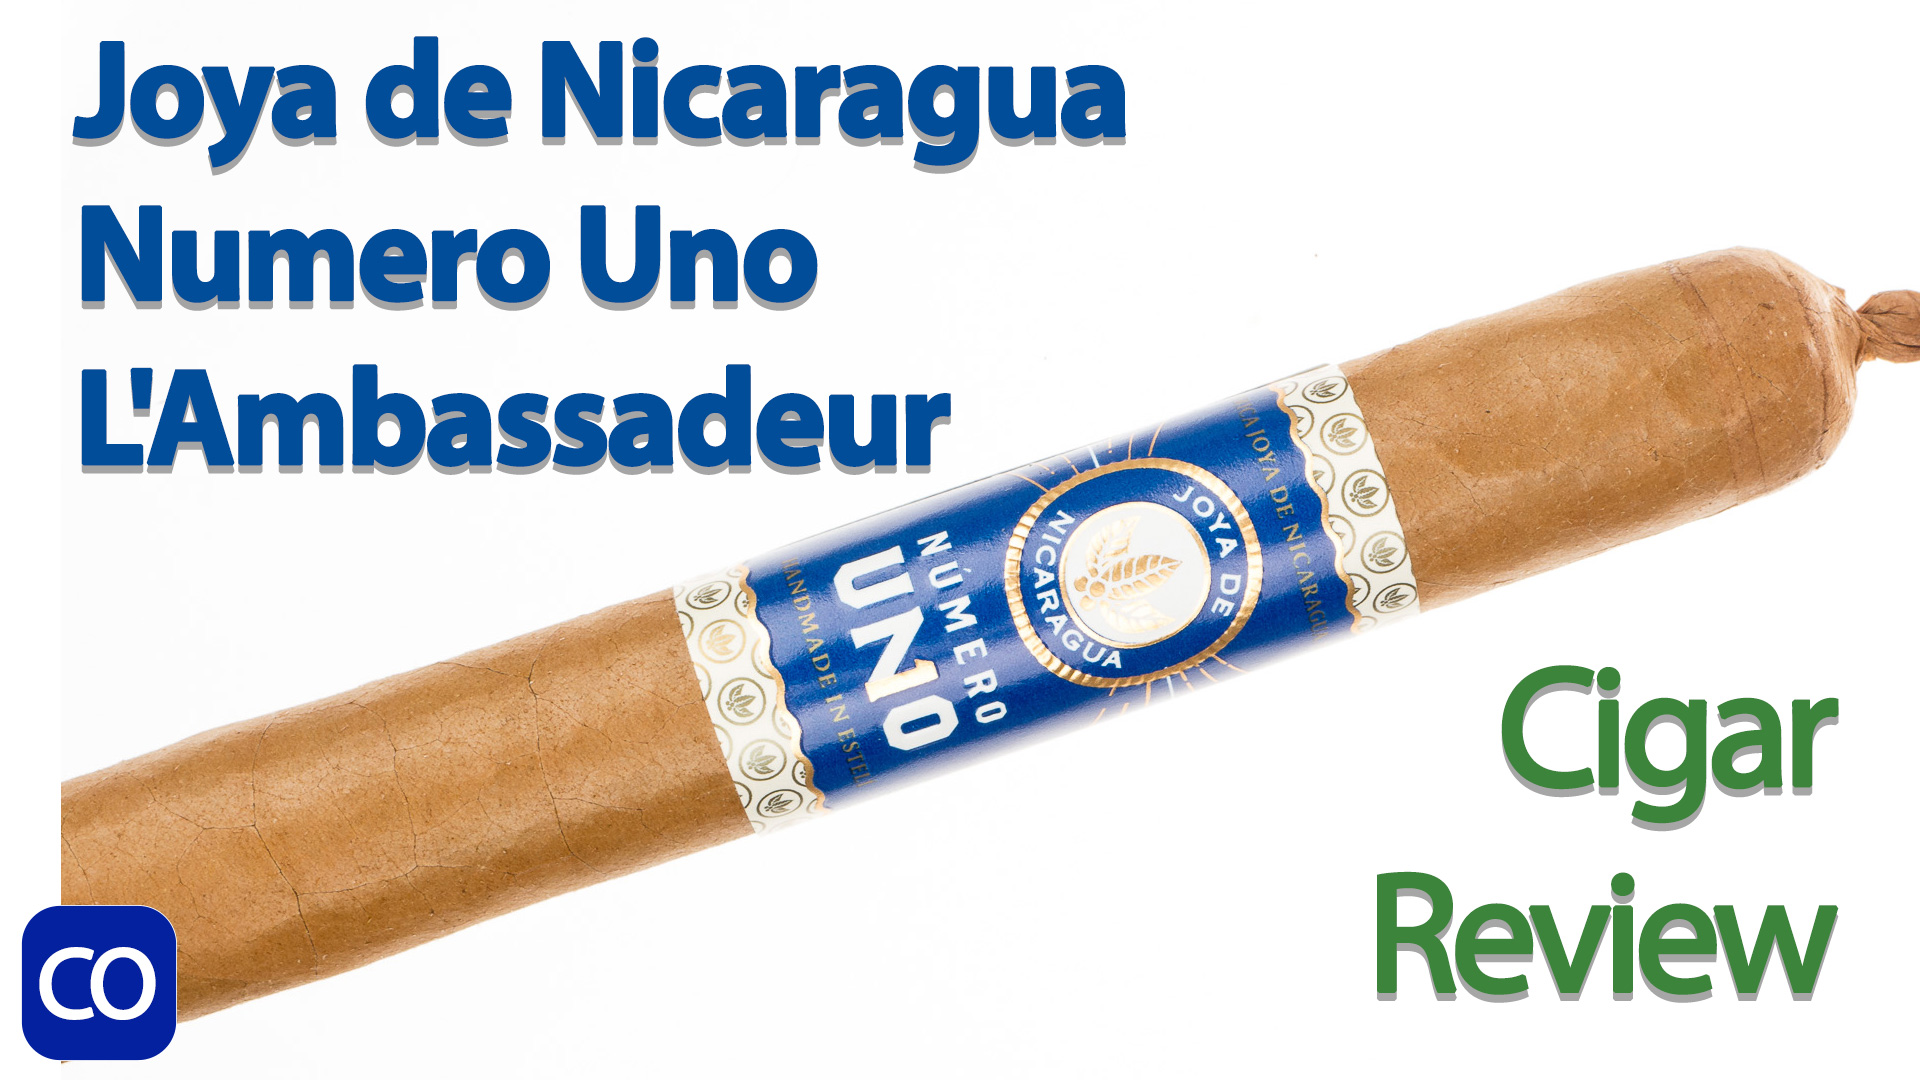 Joya de Nicaragua Numero Uno L’Ambassadeur Cigar Review